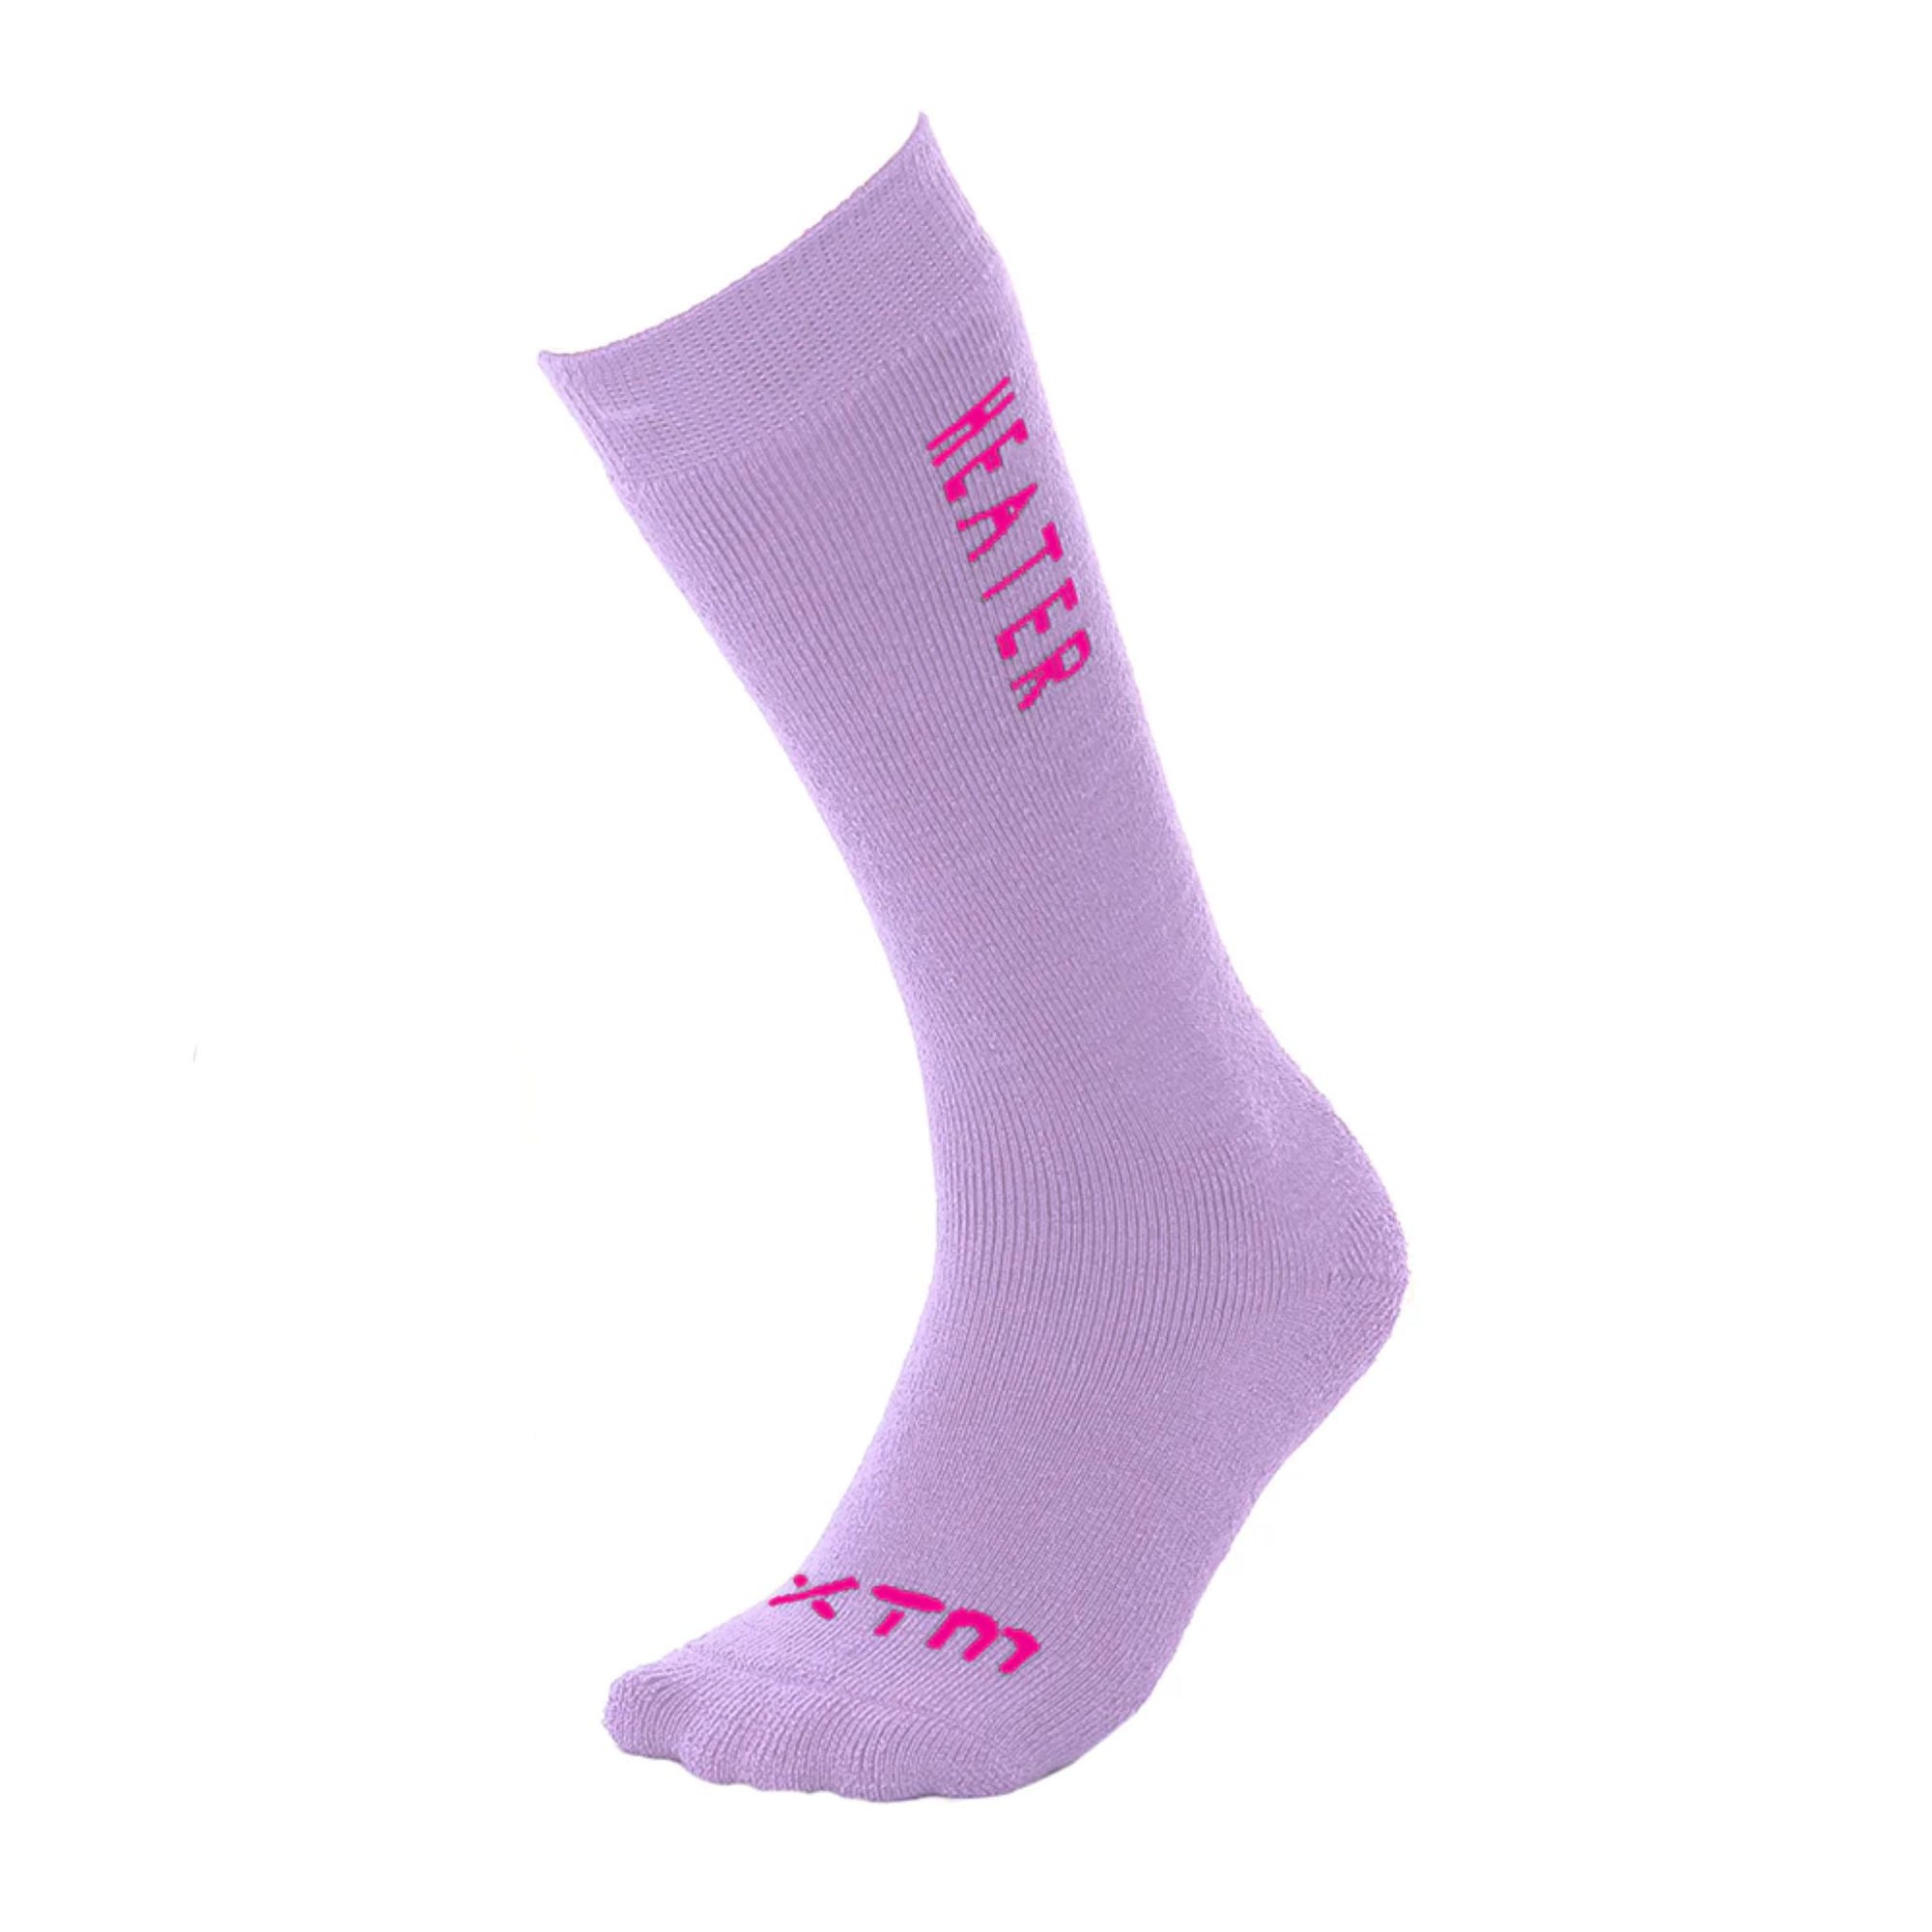 Kids XTM Heater Socks - Lavender Socks XTM 